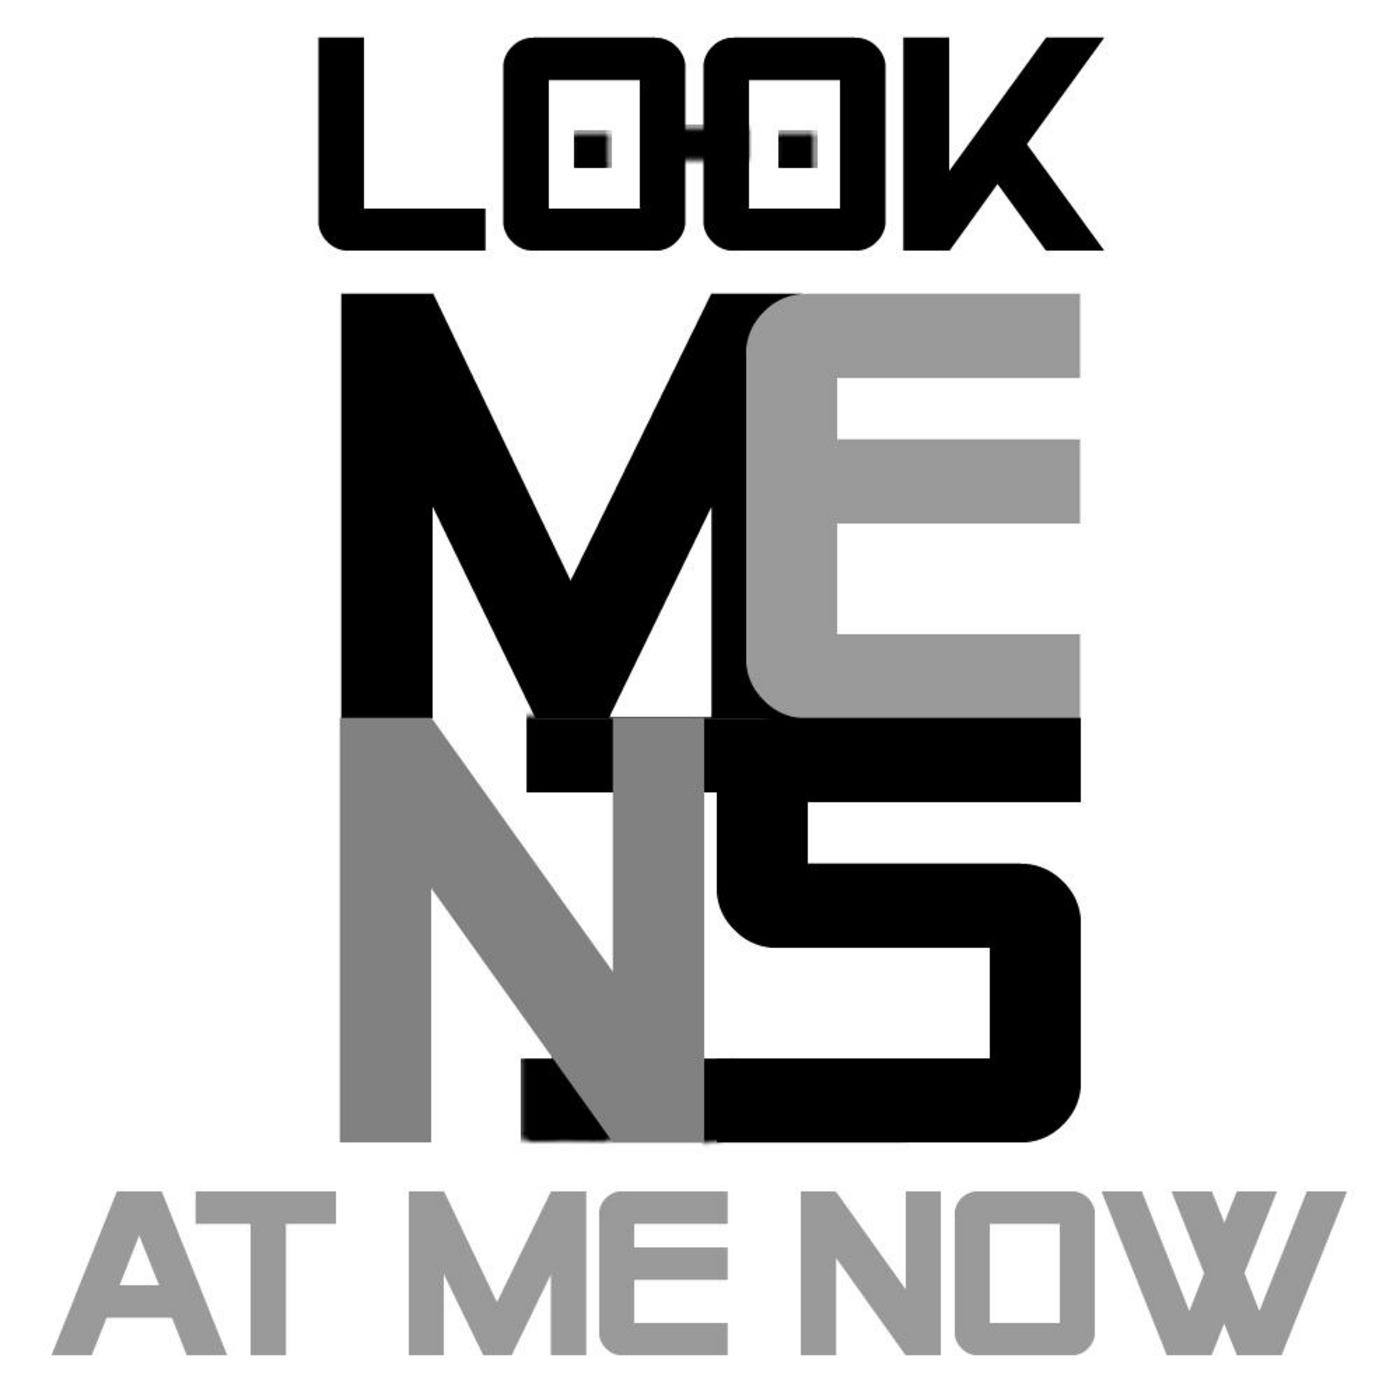 MeniS - Menis feat. Sef - Look At Me Now